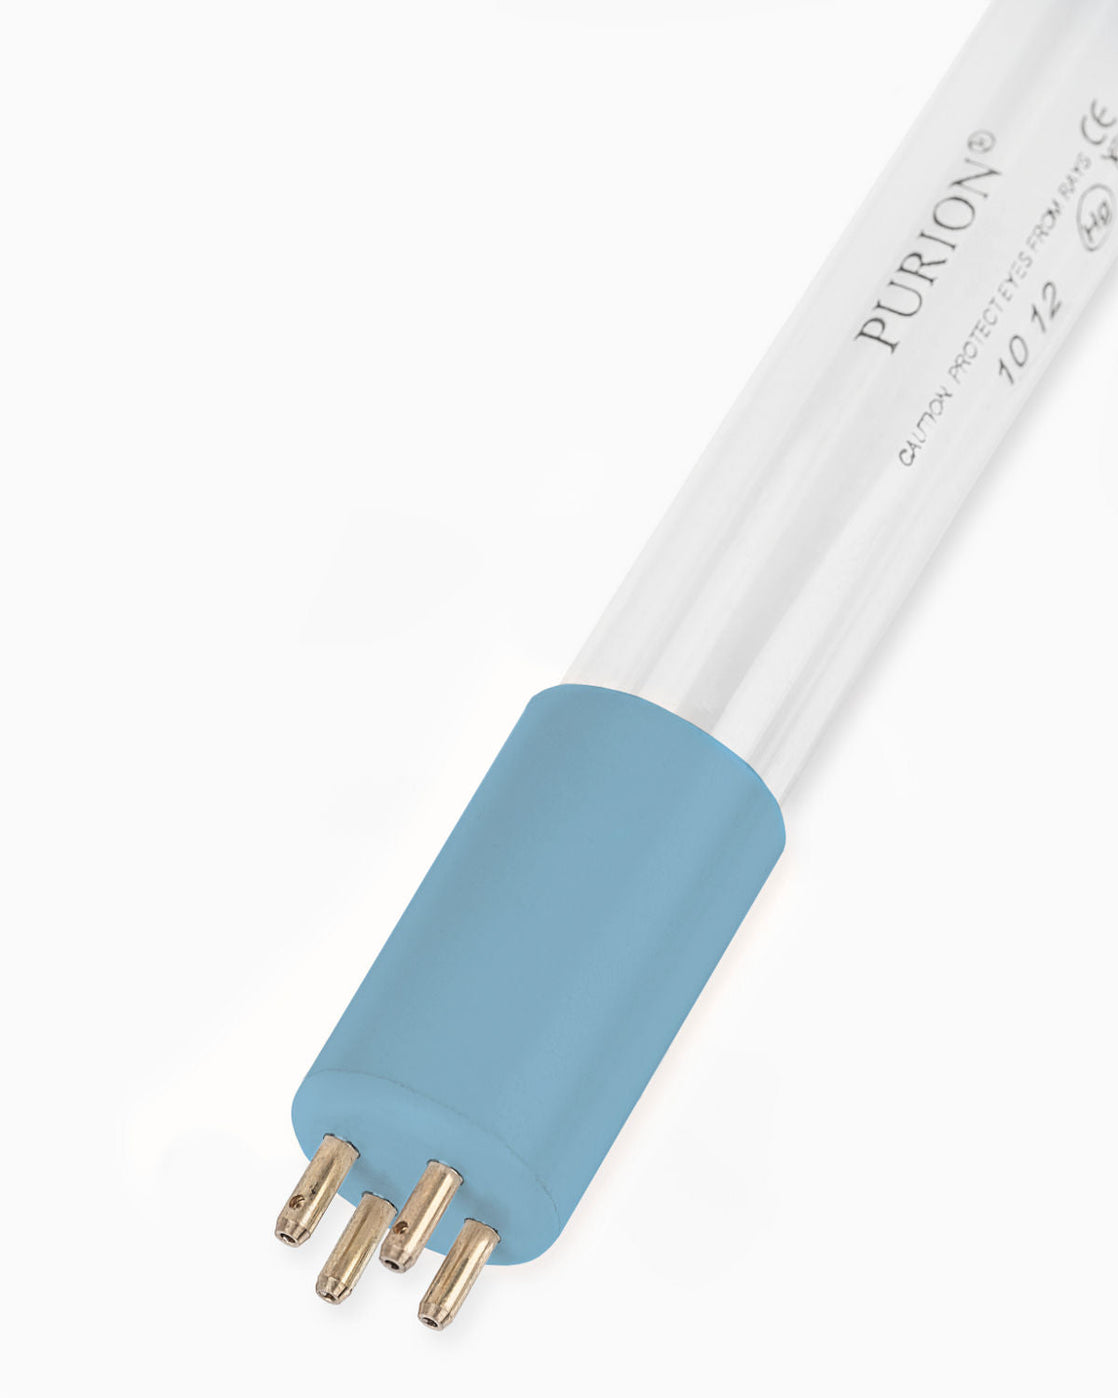 Eine blaue PURION IBC Universal 17W UV-Lichtröhre auf weißem Hintergrund, entworfen von der UV Concept GmbH, um Verkeimungen (Keime) zu beseitigen und Wasserentnahme (Wasserentnahme) zu erleichtern.